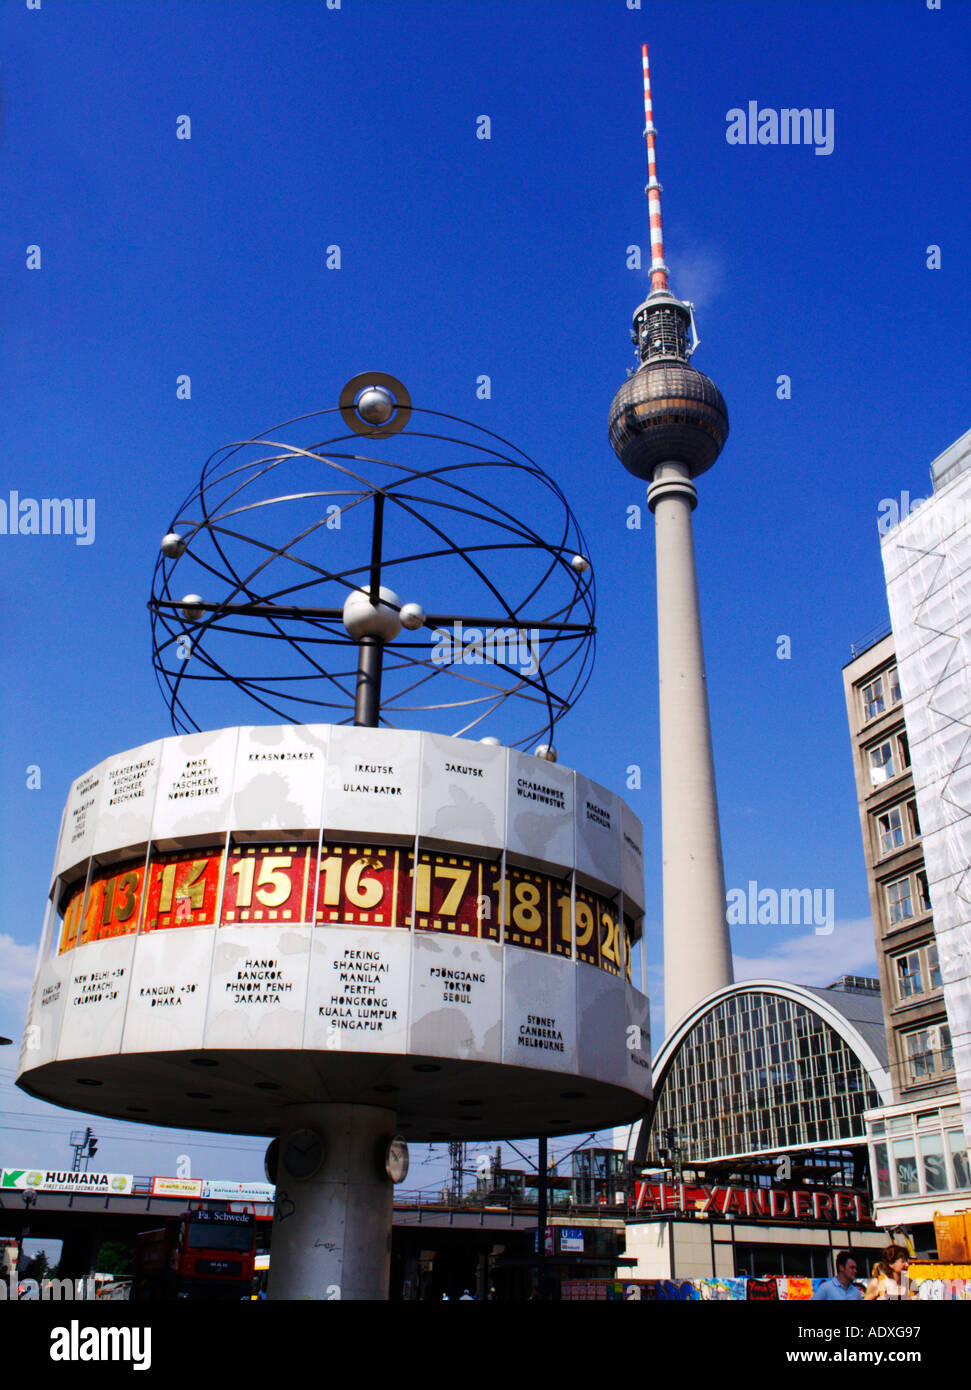 Le temps du monde de l'horloge et la tour de télévision de l'Alexanderplatz Mitte à Berlin Allemagne 2005 Banque D'Images